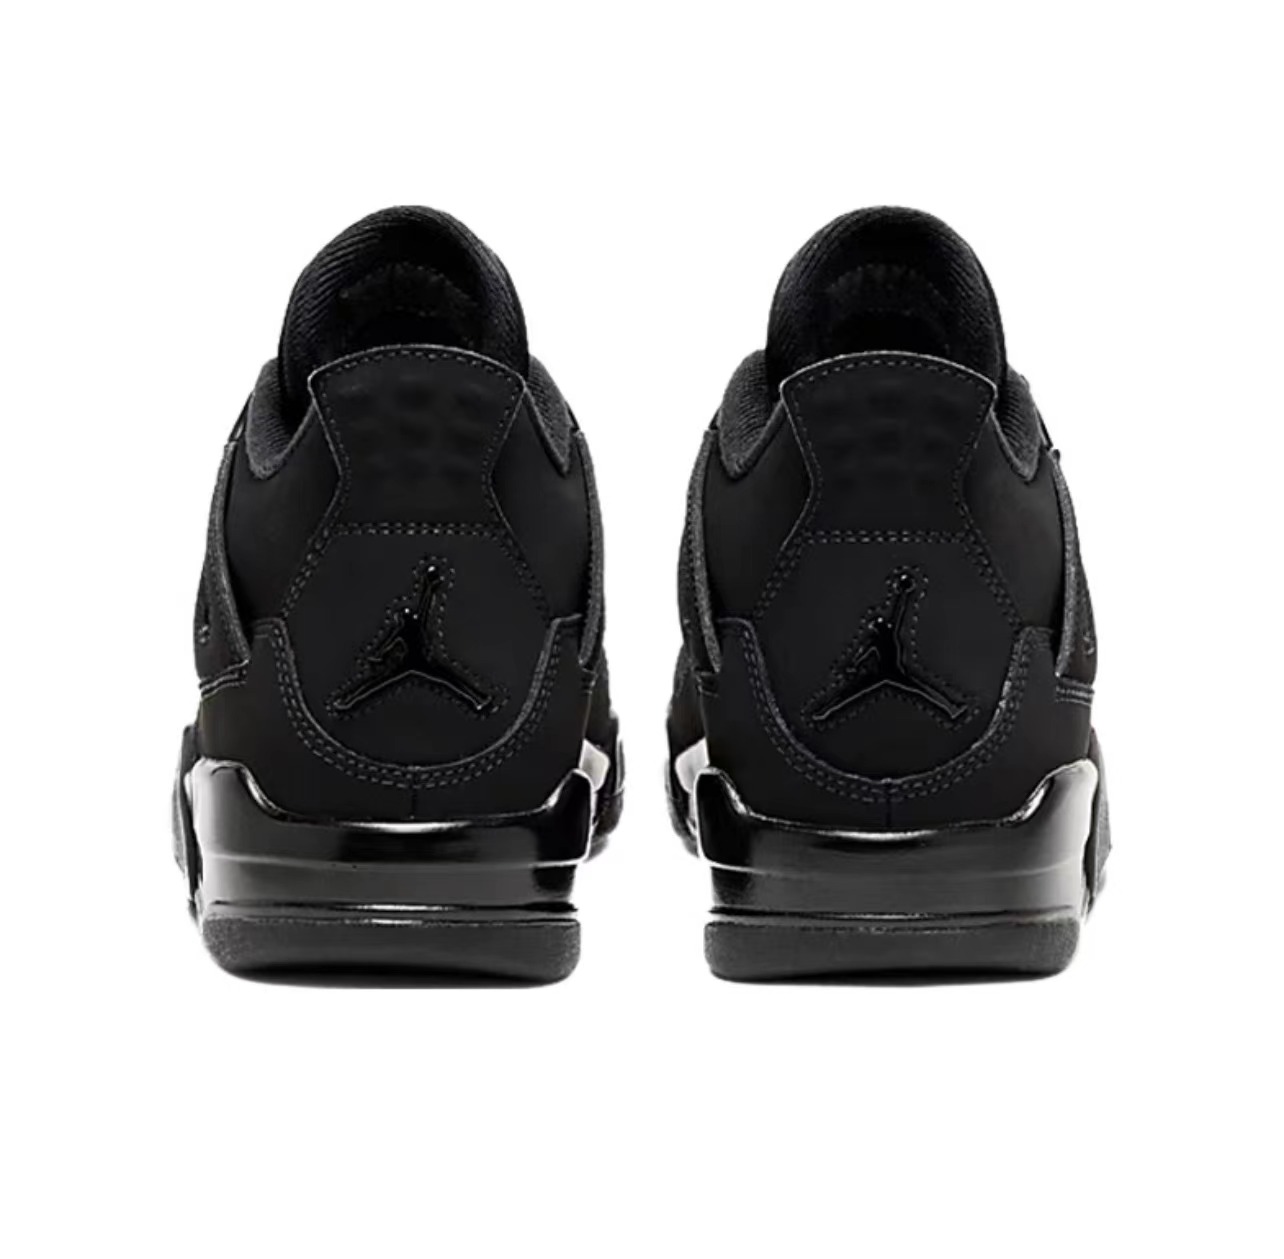 Air Jordan 4 Retro GS “Black Cat”